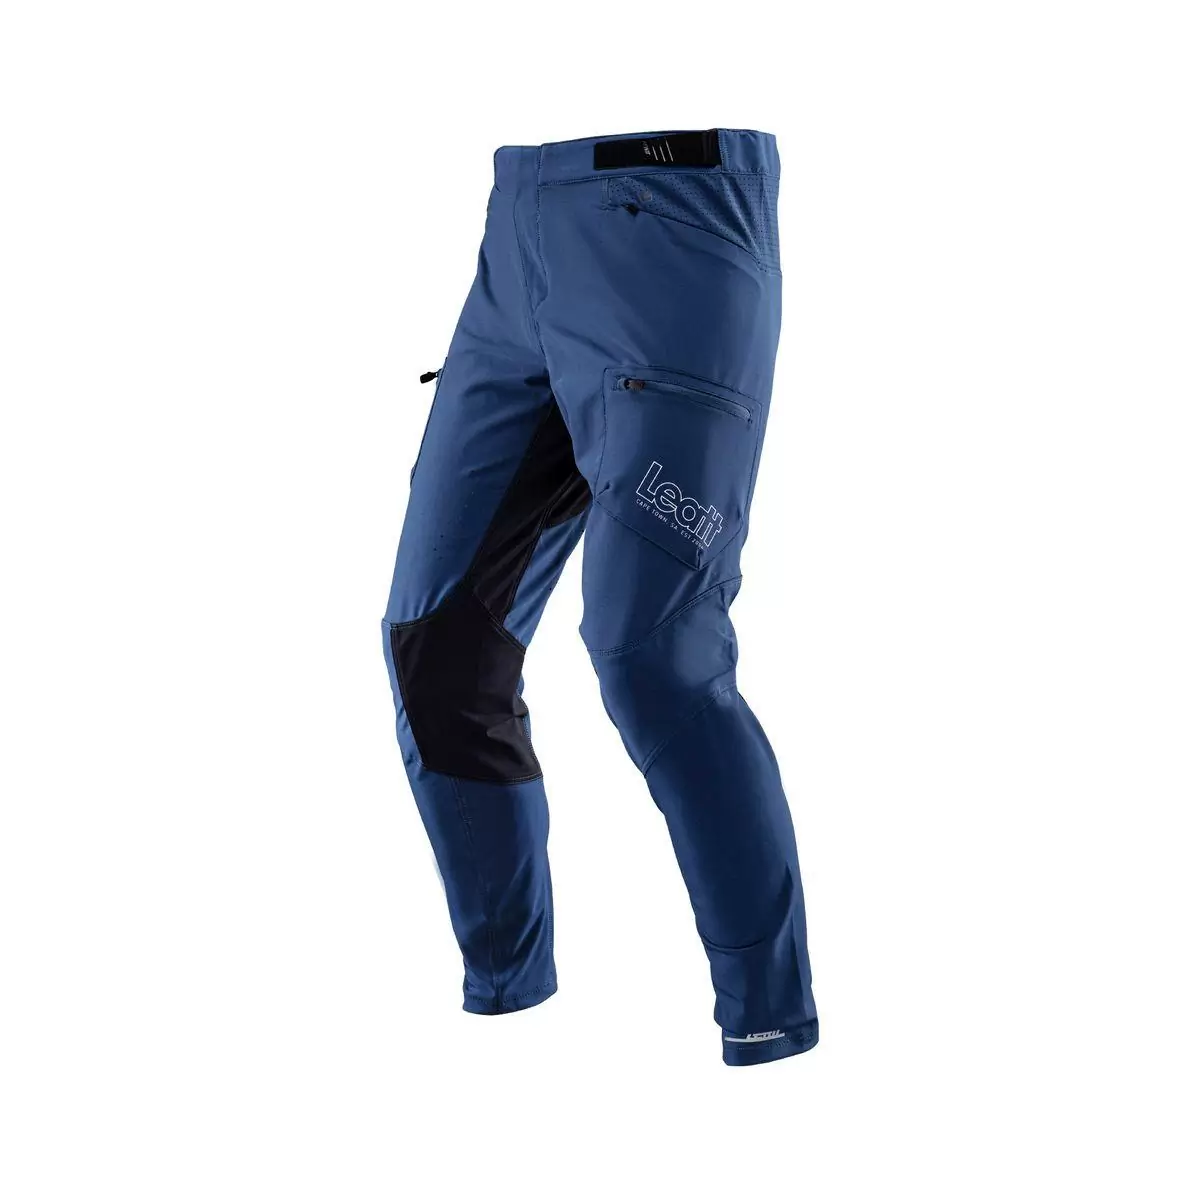 Leatt 3.0 Enduro - Pantalones de MTB Pantalones largos MTB